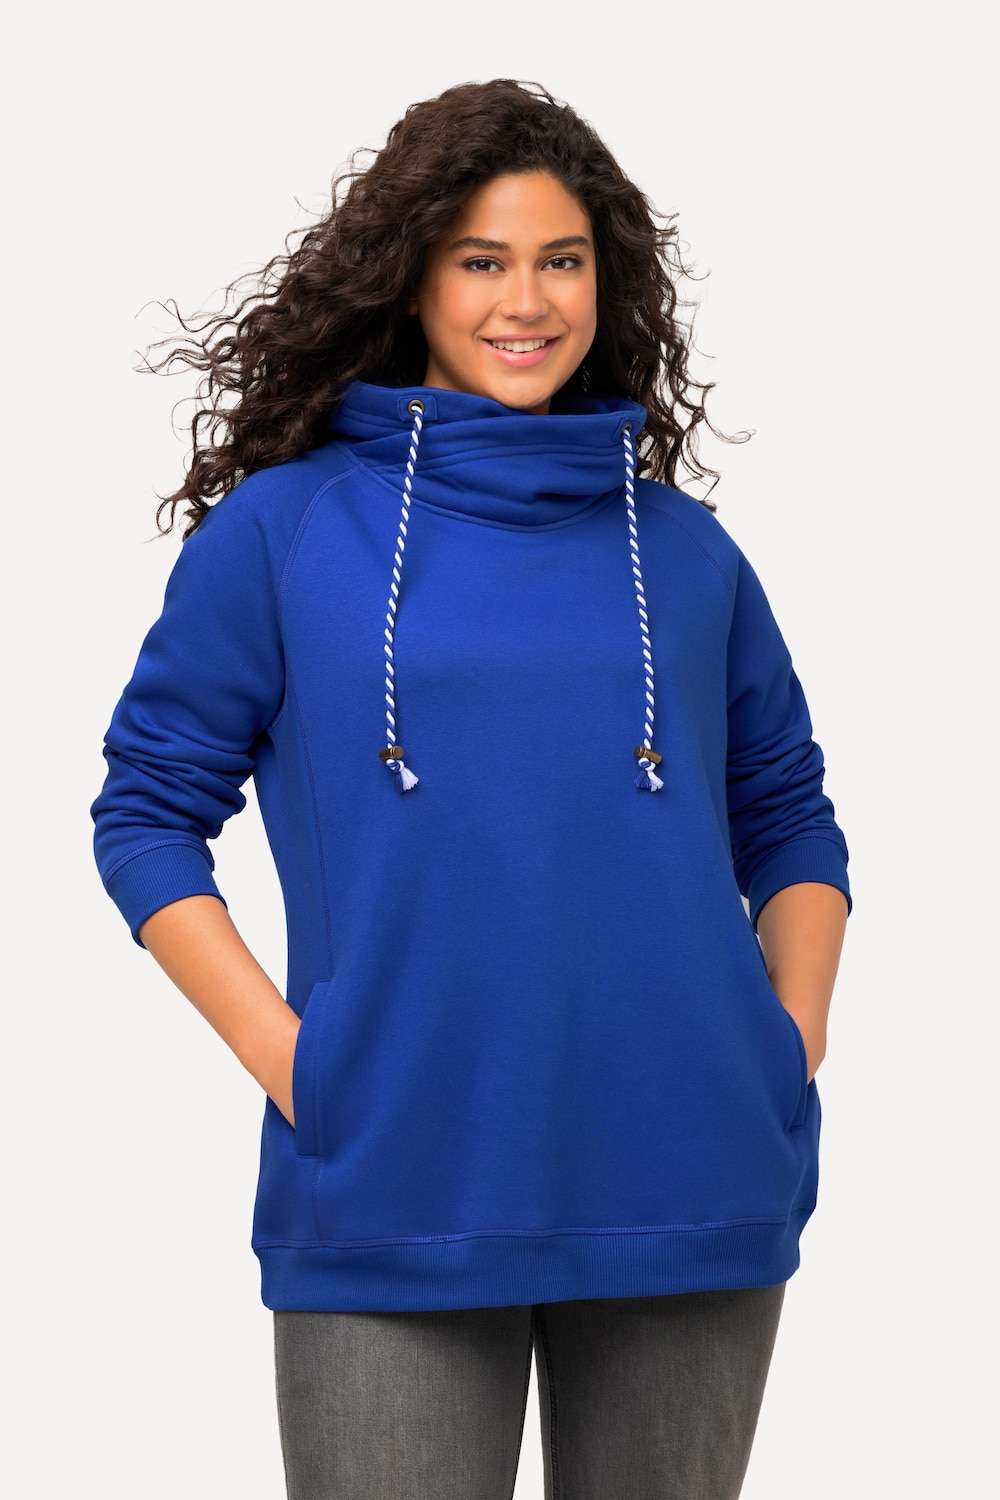 Grote Maten sweatshirt, Dames, blauw, Maat: 62/64, Katoen/Polyester, Ulla Popken